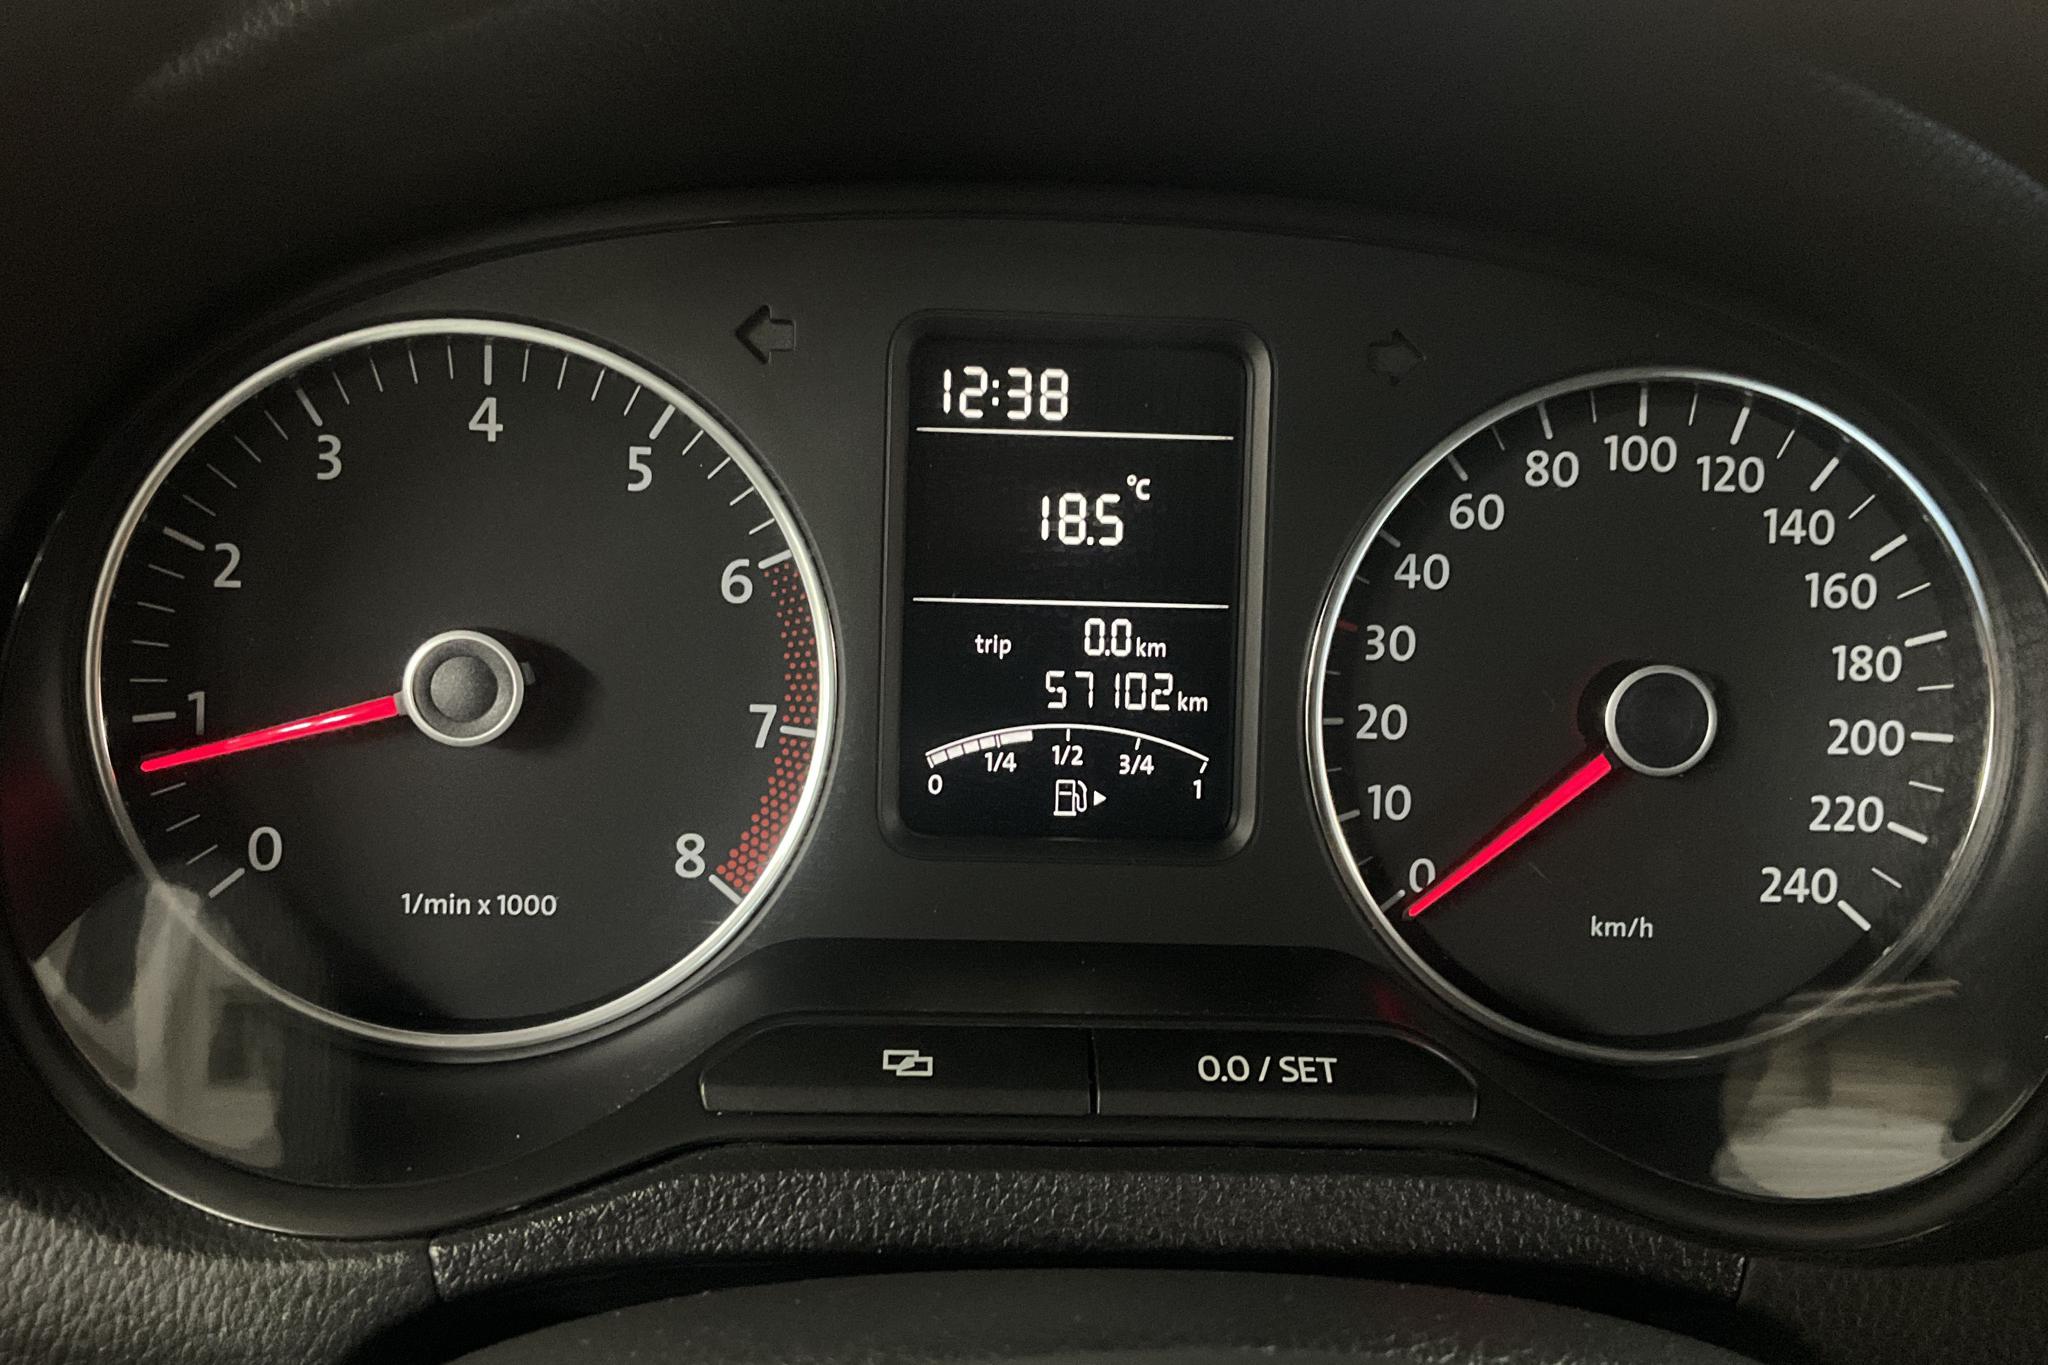 VW Polo 1.2 TSI 5dr (90hk) - 57 100 km - Manual - white - 2012